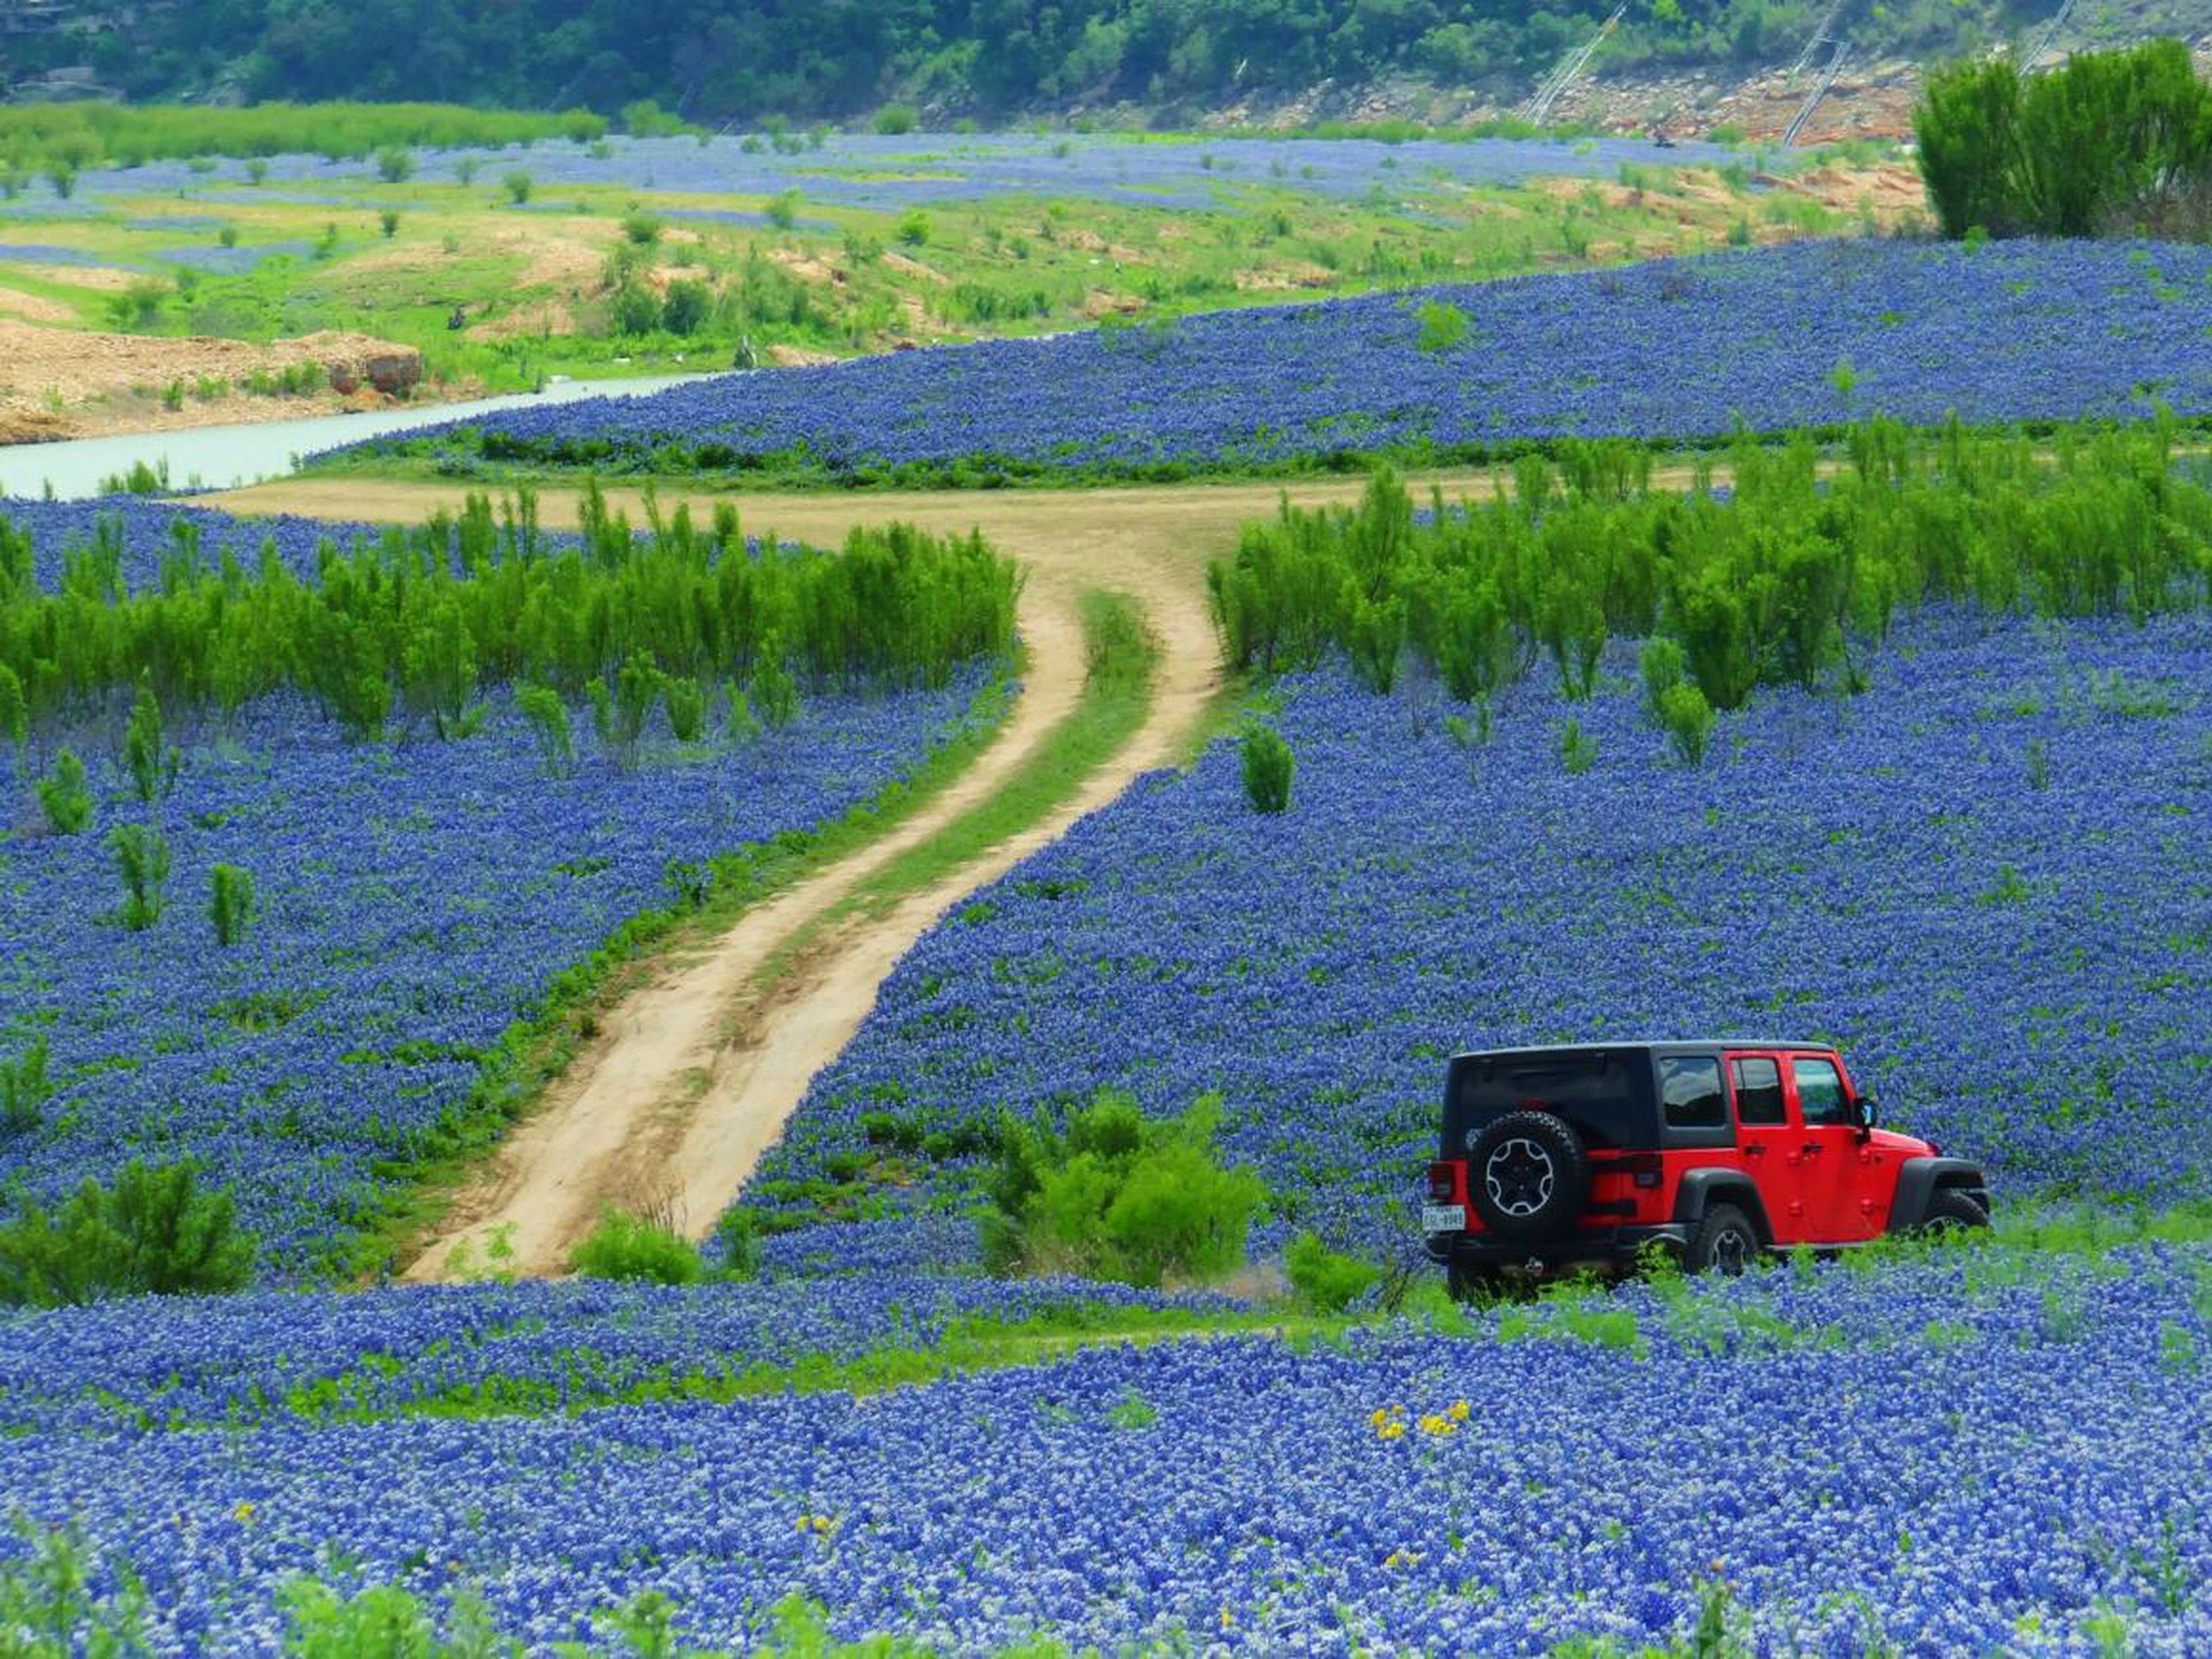 En primavera los locales pueden conducir rodeados de campos de flores bluebonnet.